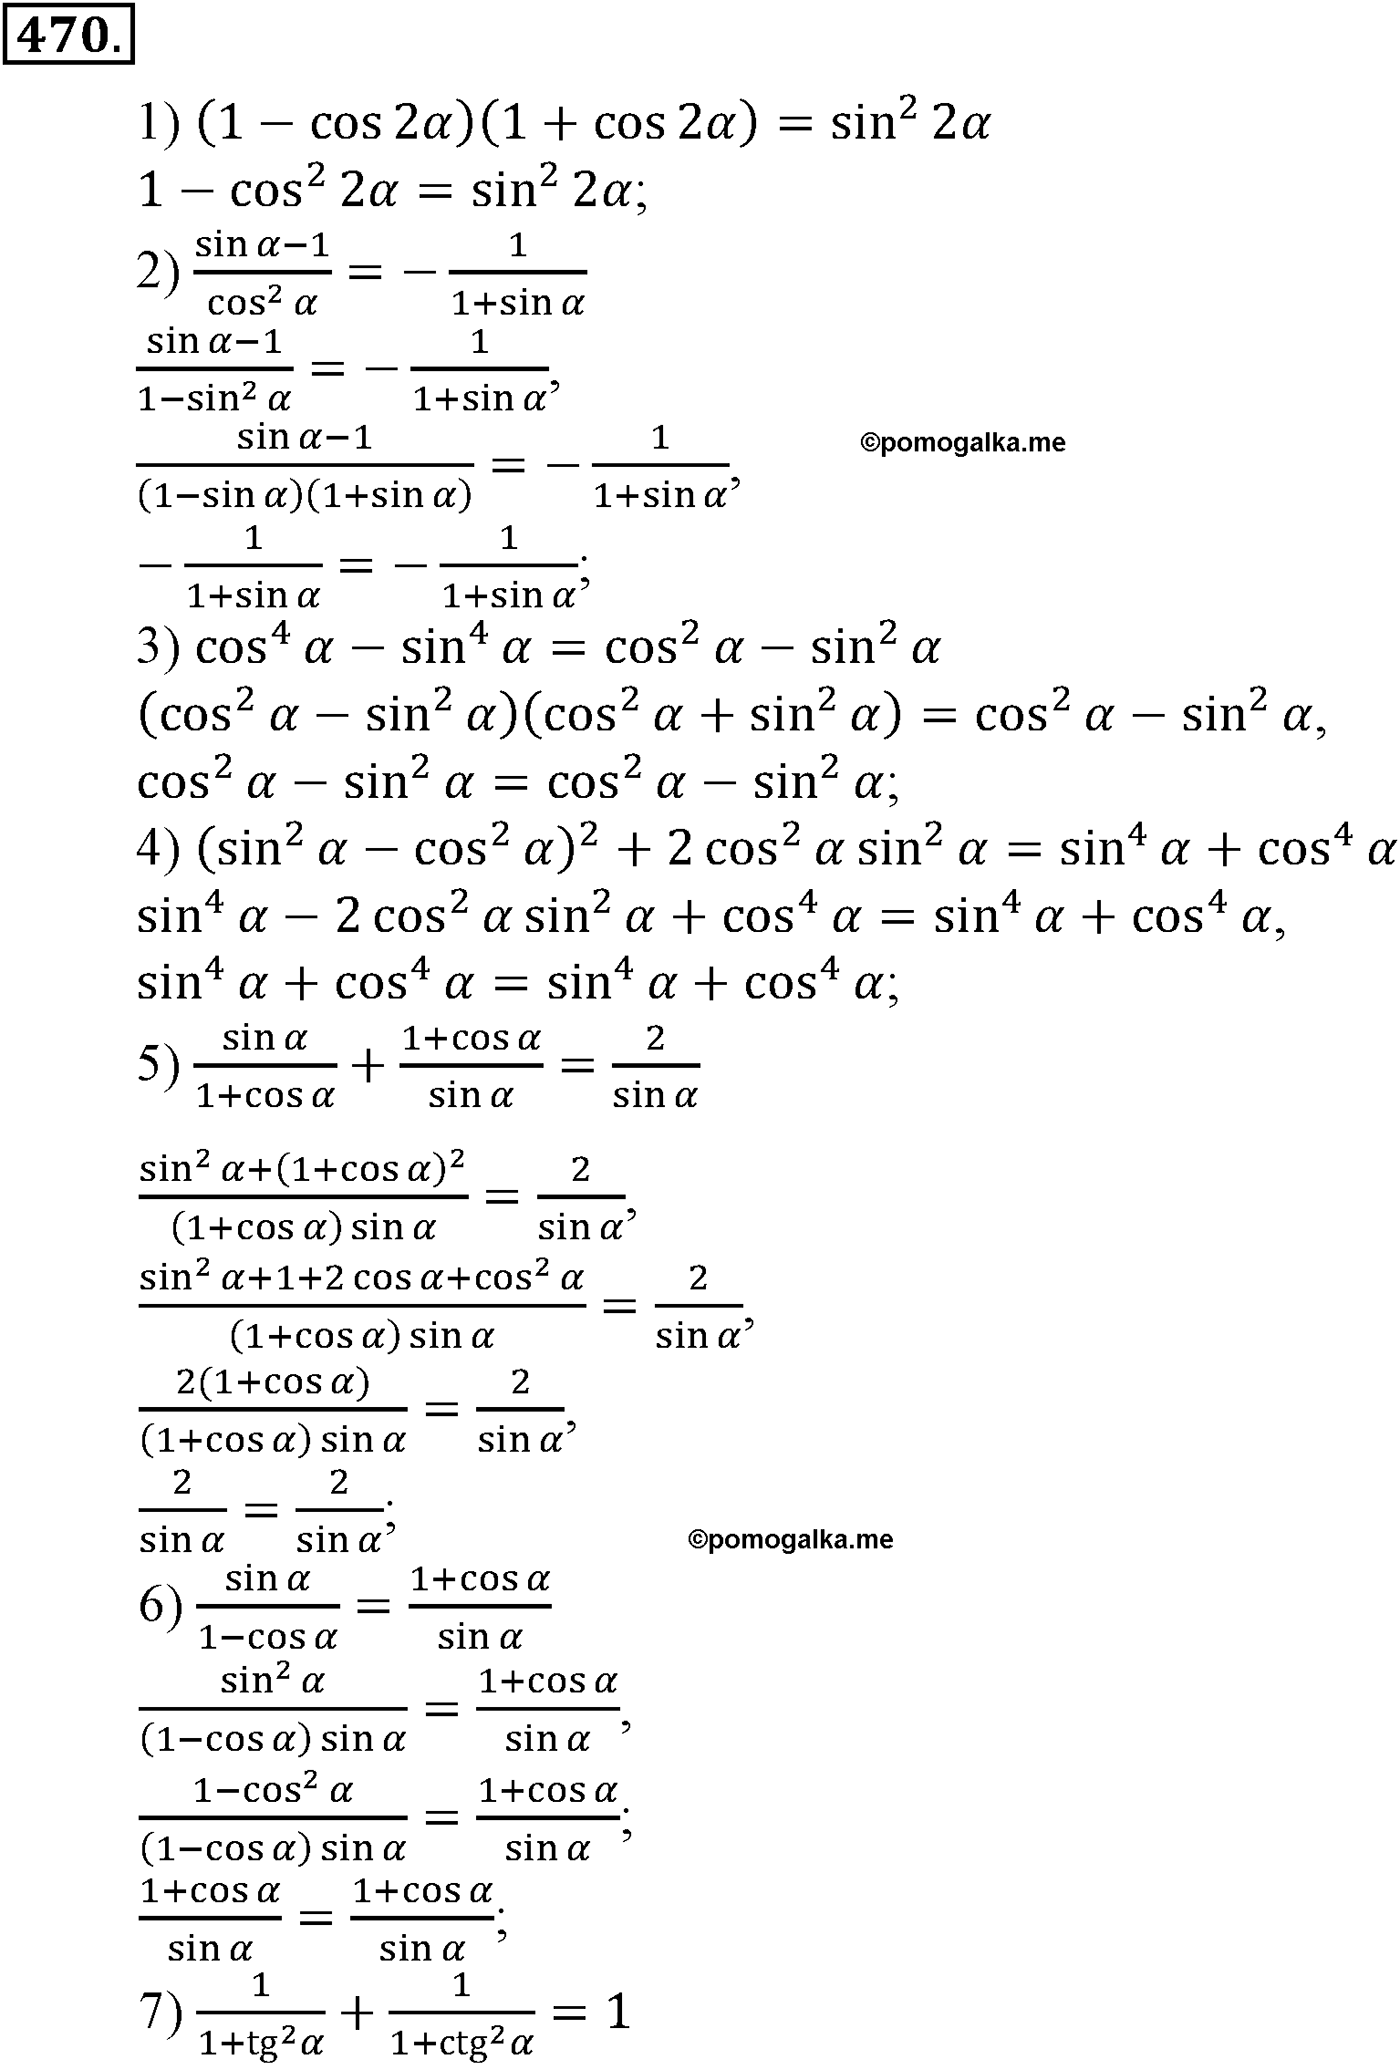 разбор задачи №470 по алгебре за 10-11 класс из учебника Алимова, Колягина